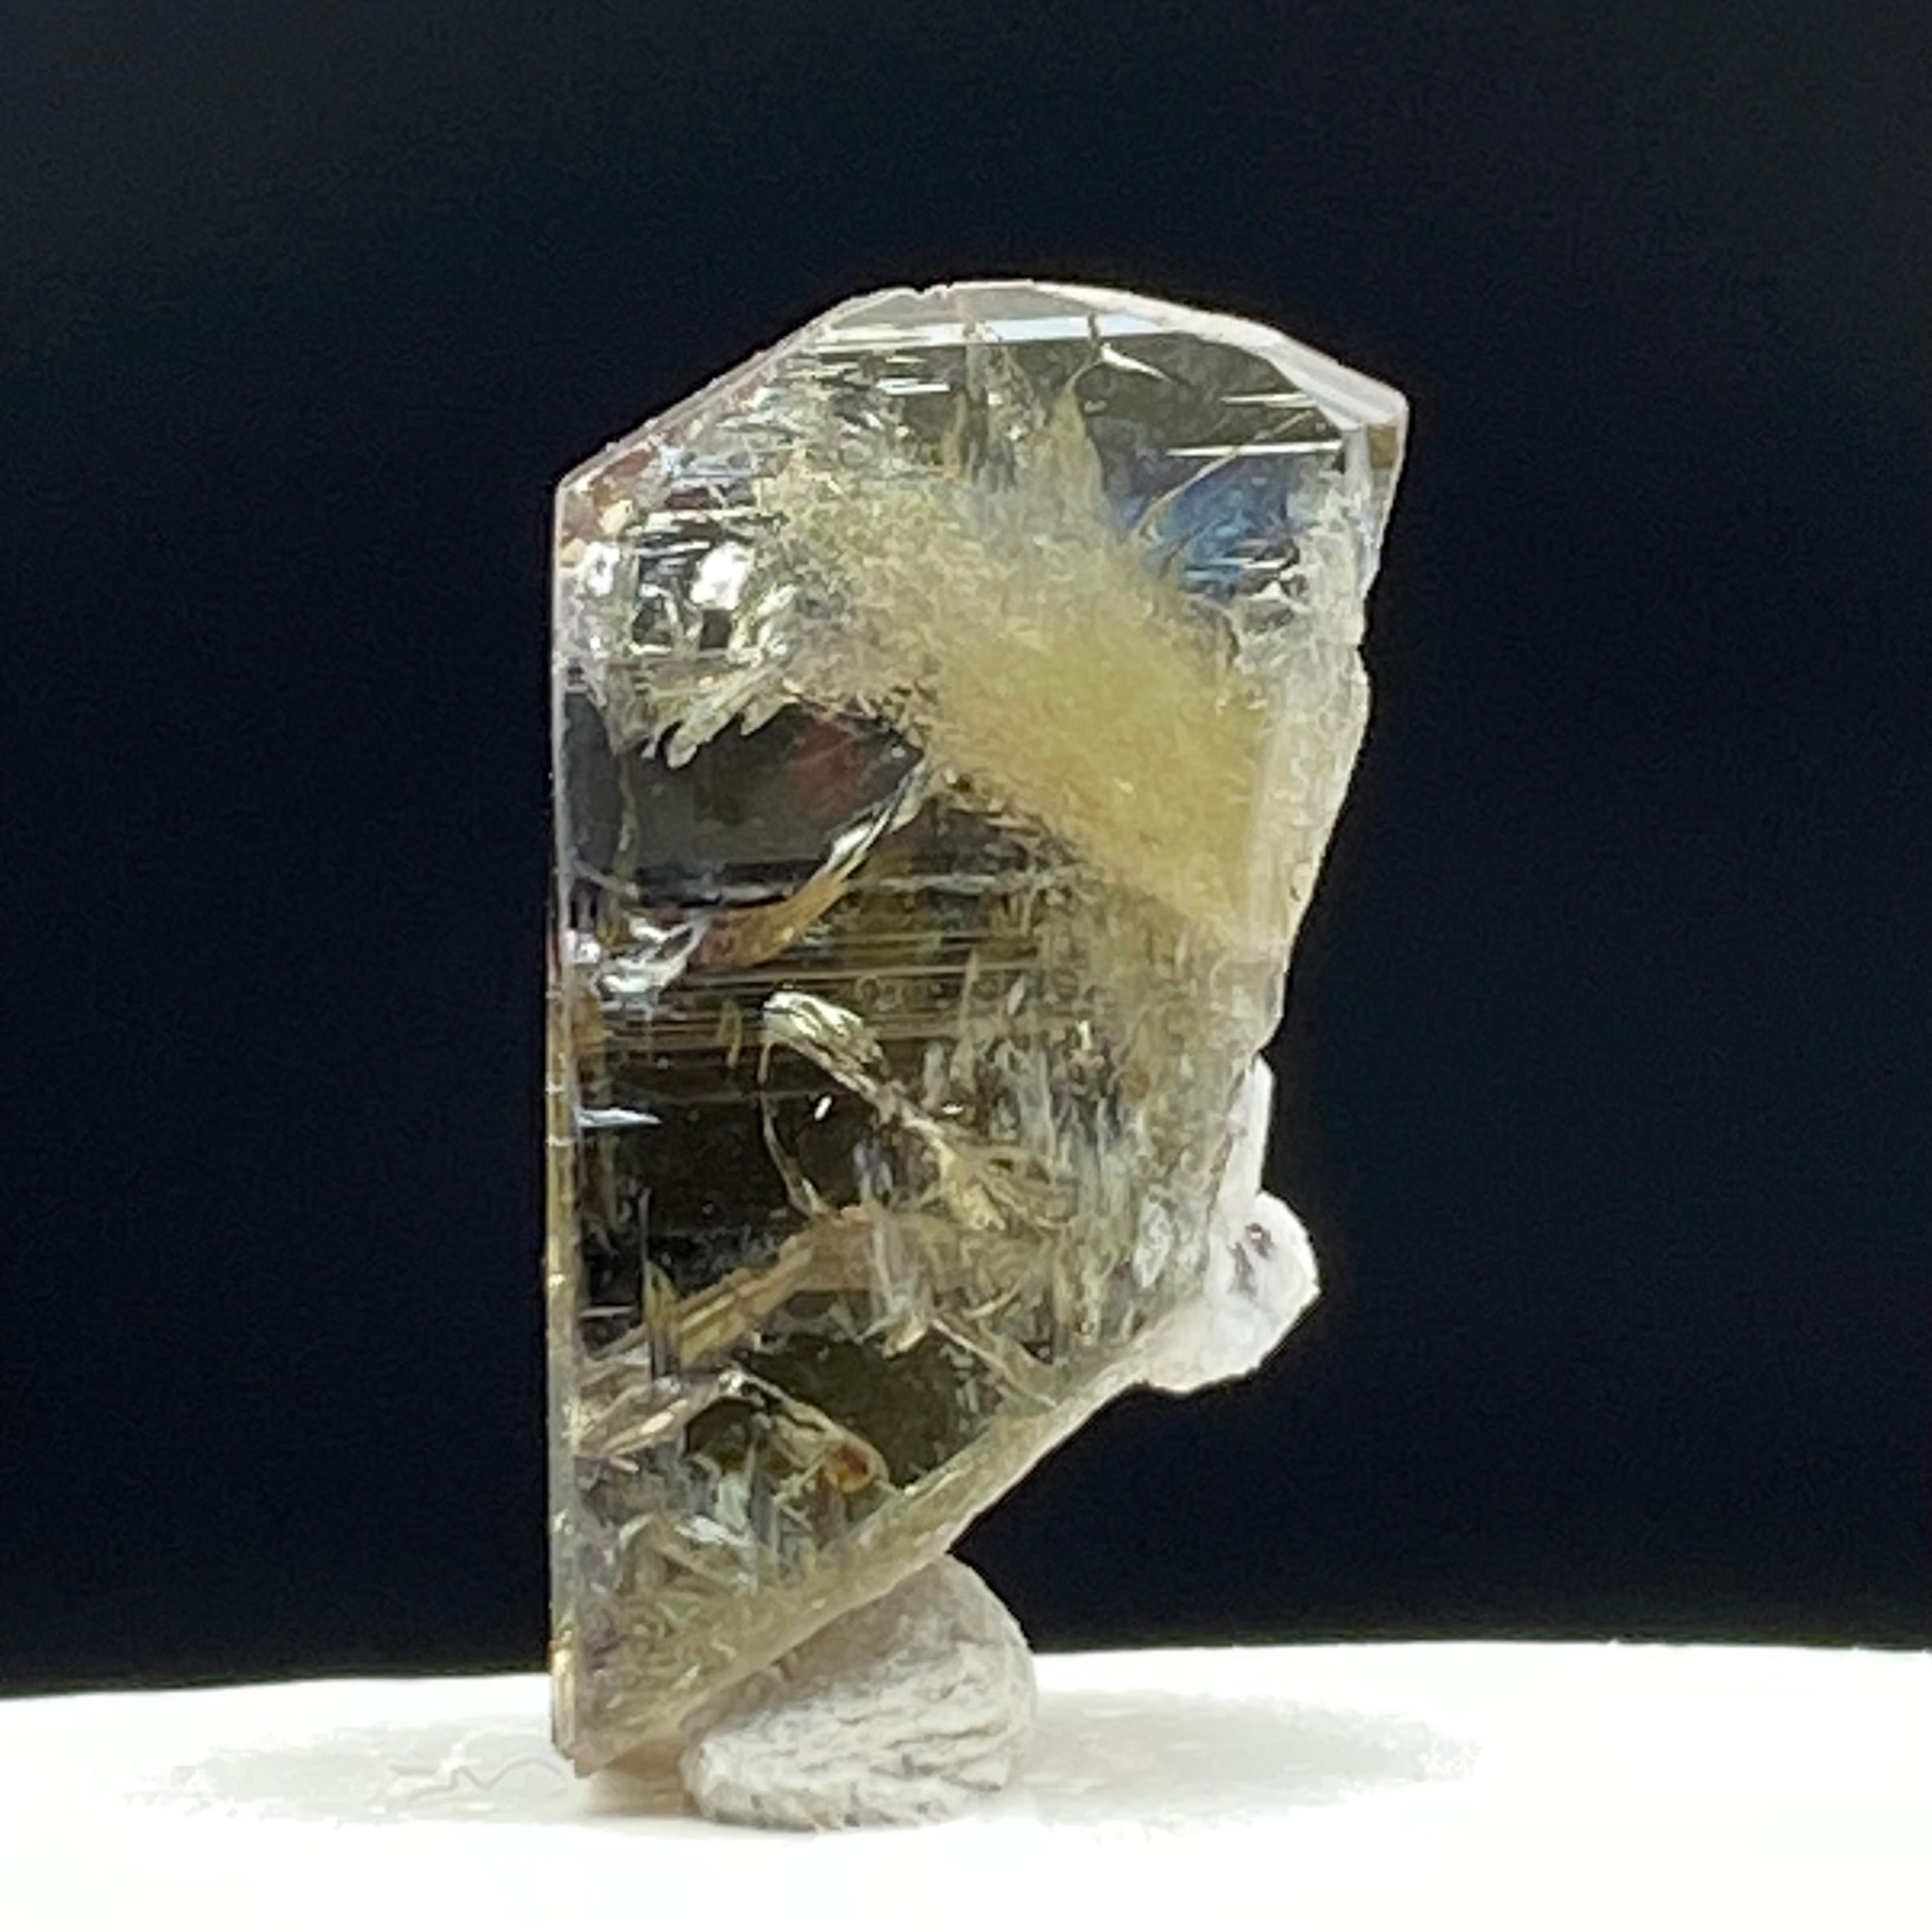 Real Tanzanite Crystal - 076